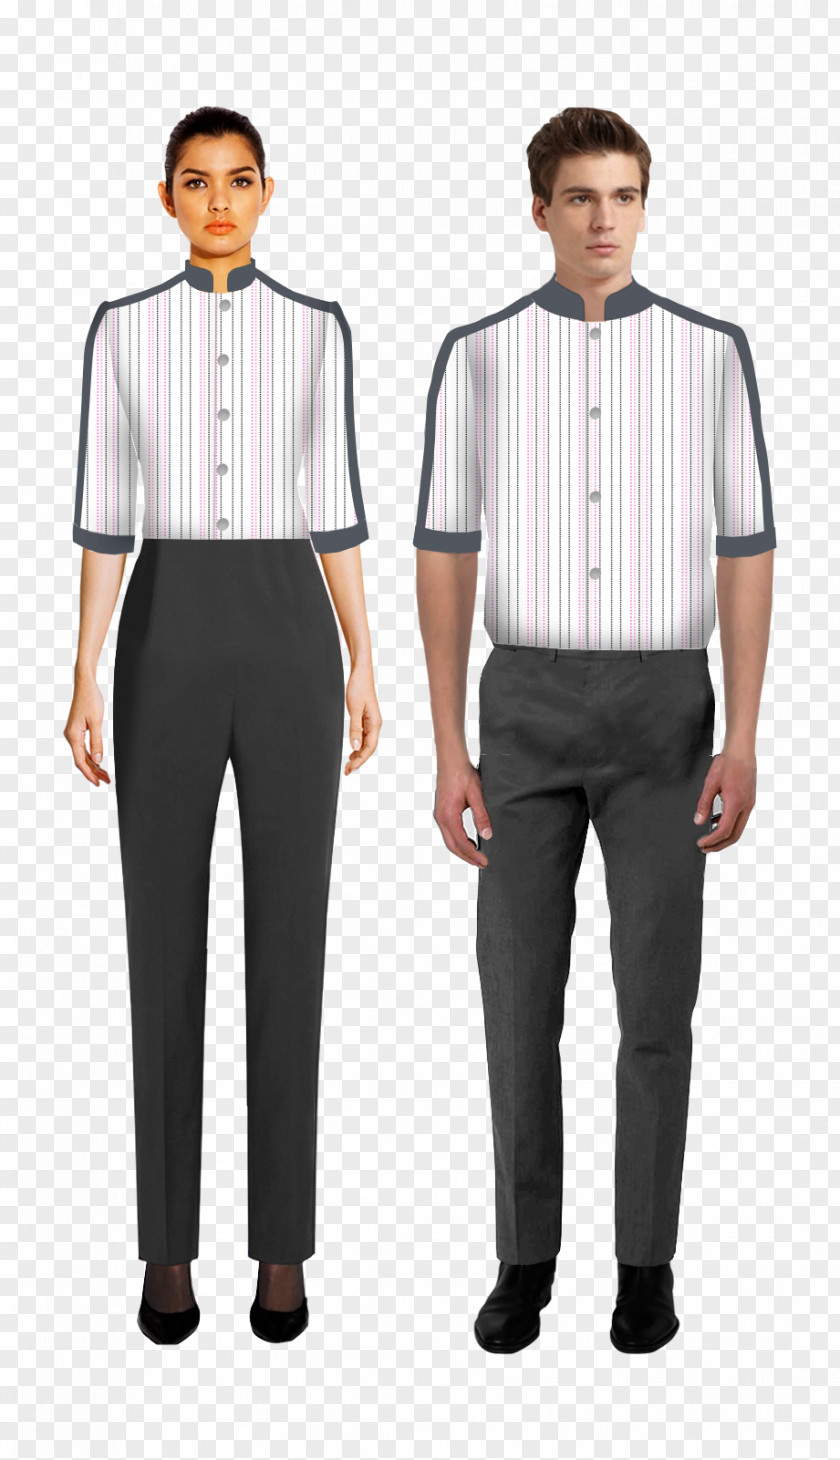 Uniforms Tuxedo Uniform Housekeeping Clothing Dress Shirt PNG